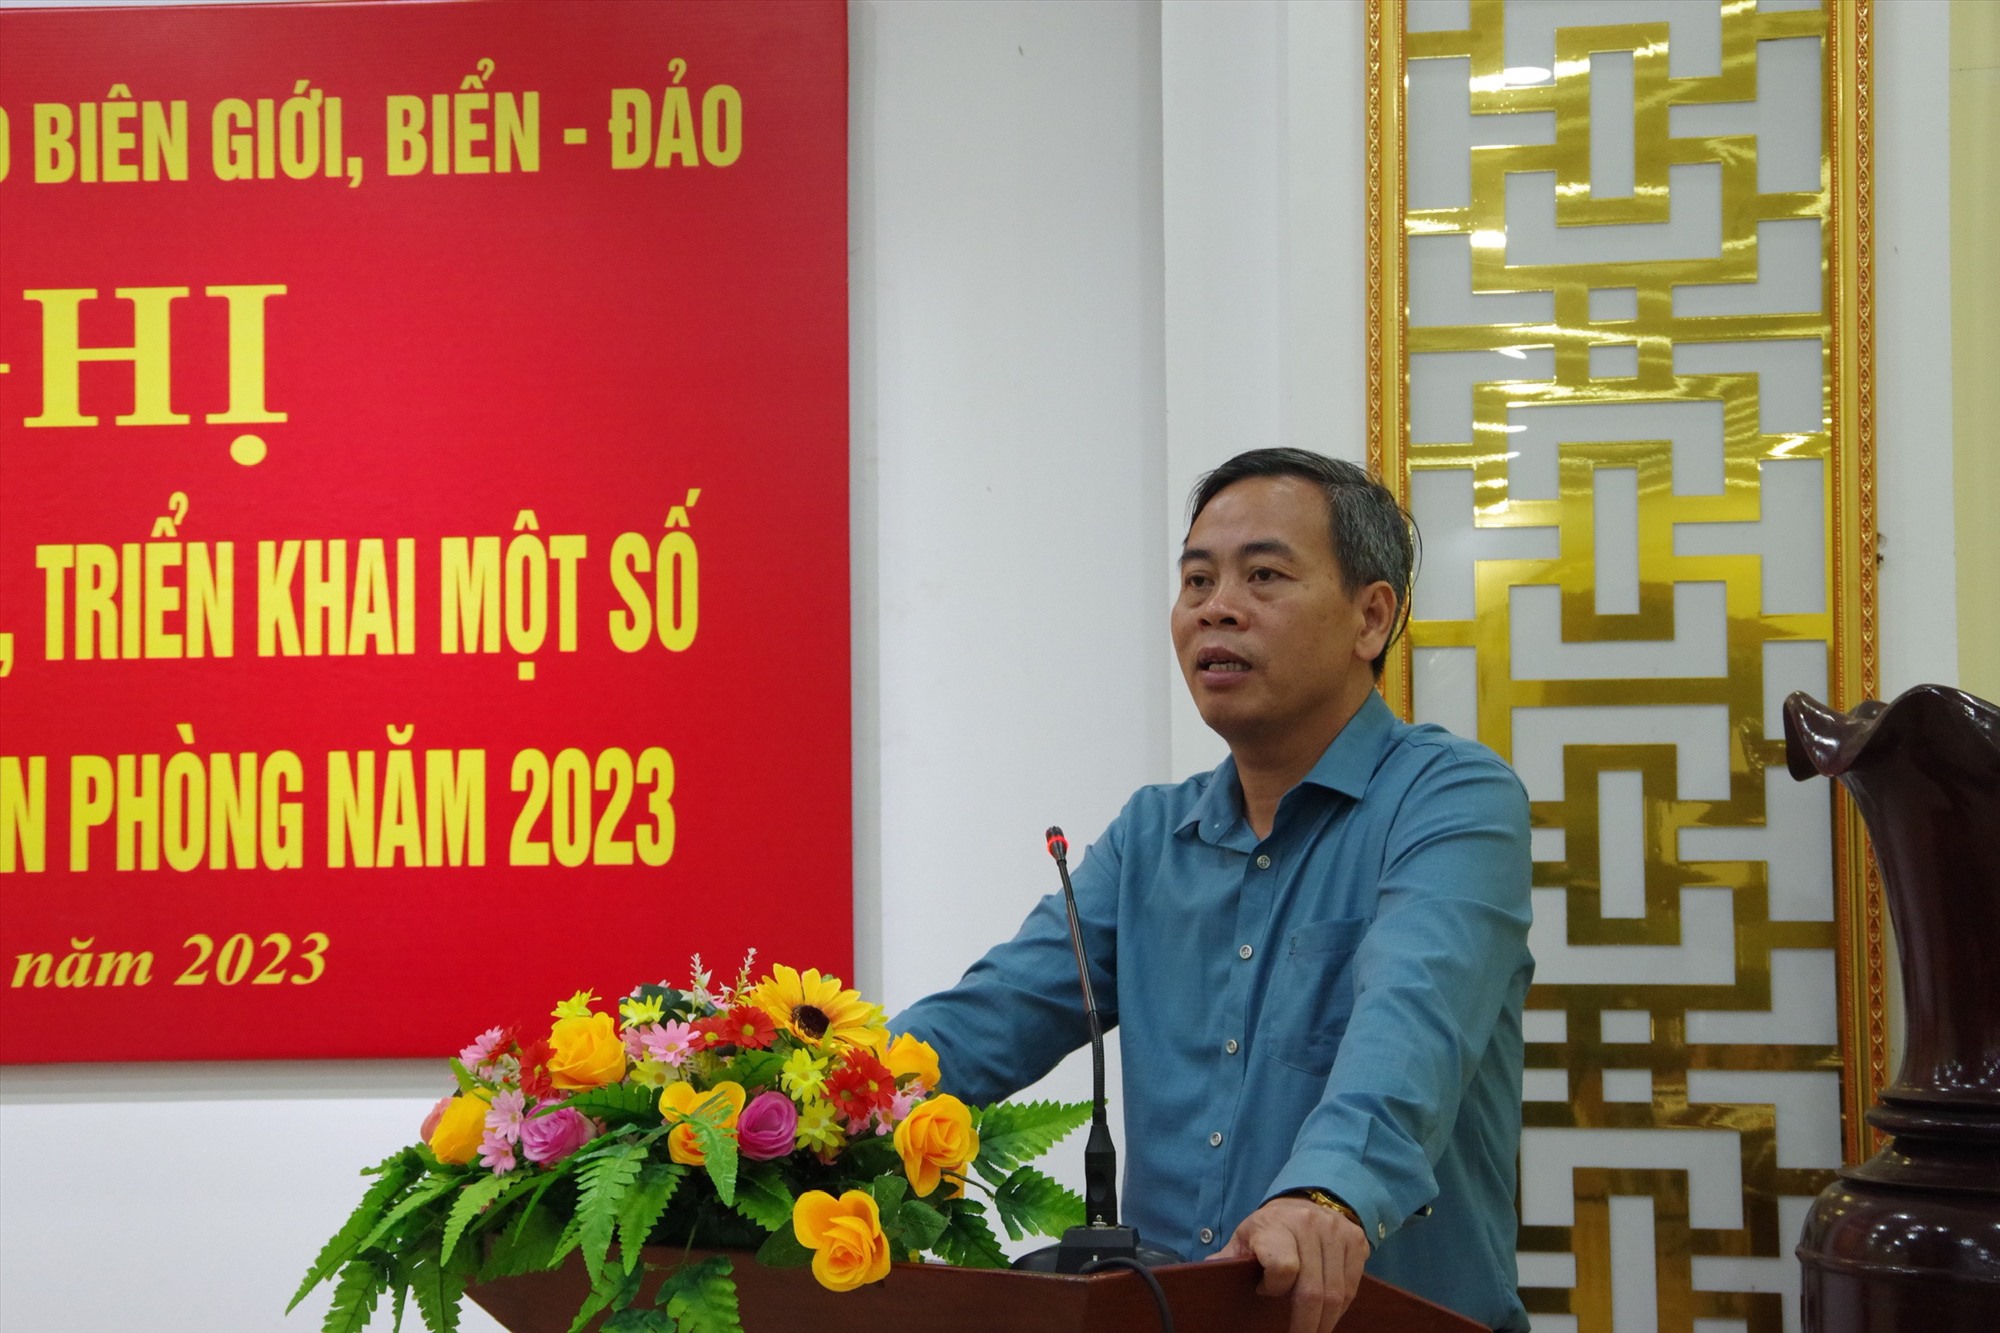 2) Đồng chí Nguyễn Đăng Quang, Phó Bí thư Thường trực Tỉnh ủy, Chủ tịch HĐND tỉnh Quảng Trị phát biểu chỉ đạo tại Hội nghị